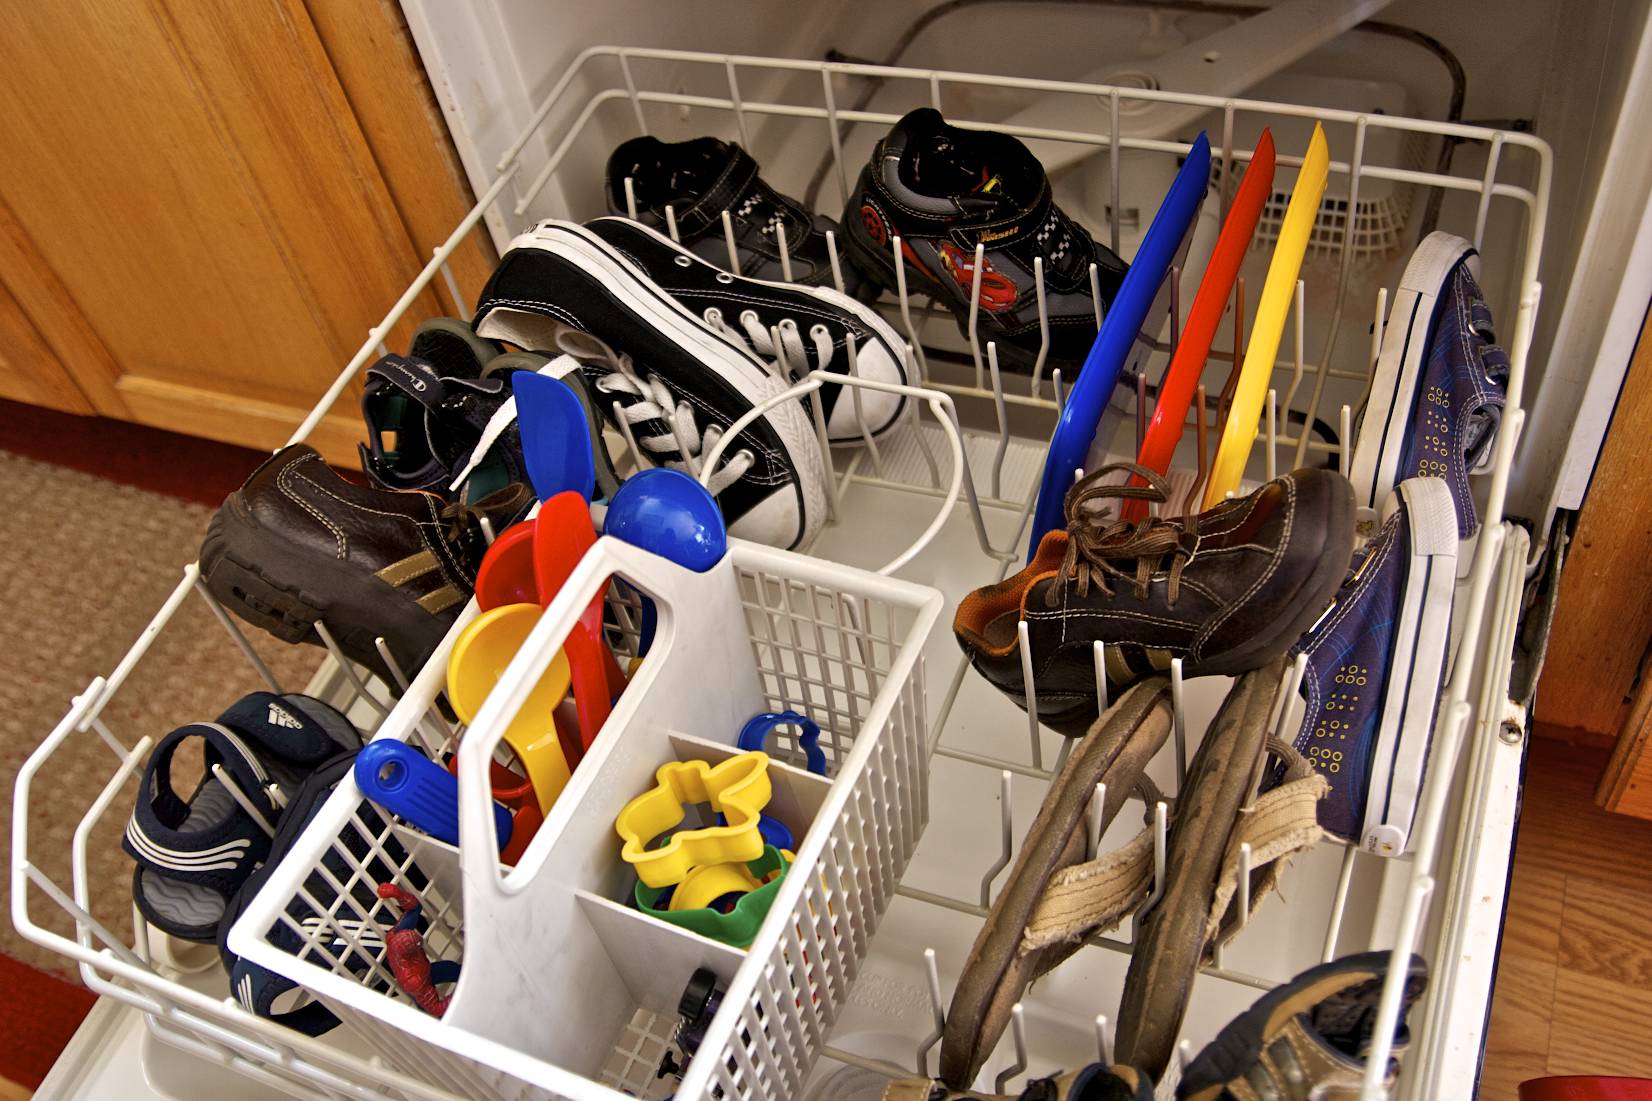 16 έξυπνα κόλπα για την καθαριότητα του σπιτιού που θα μας λύσουν τα χέρια